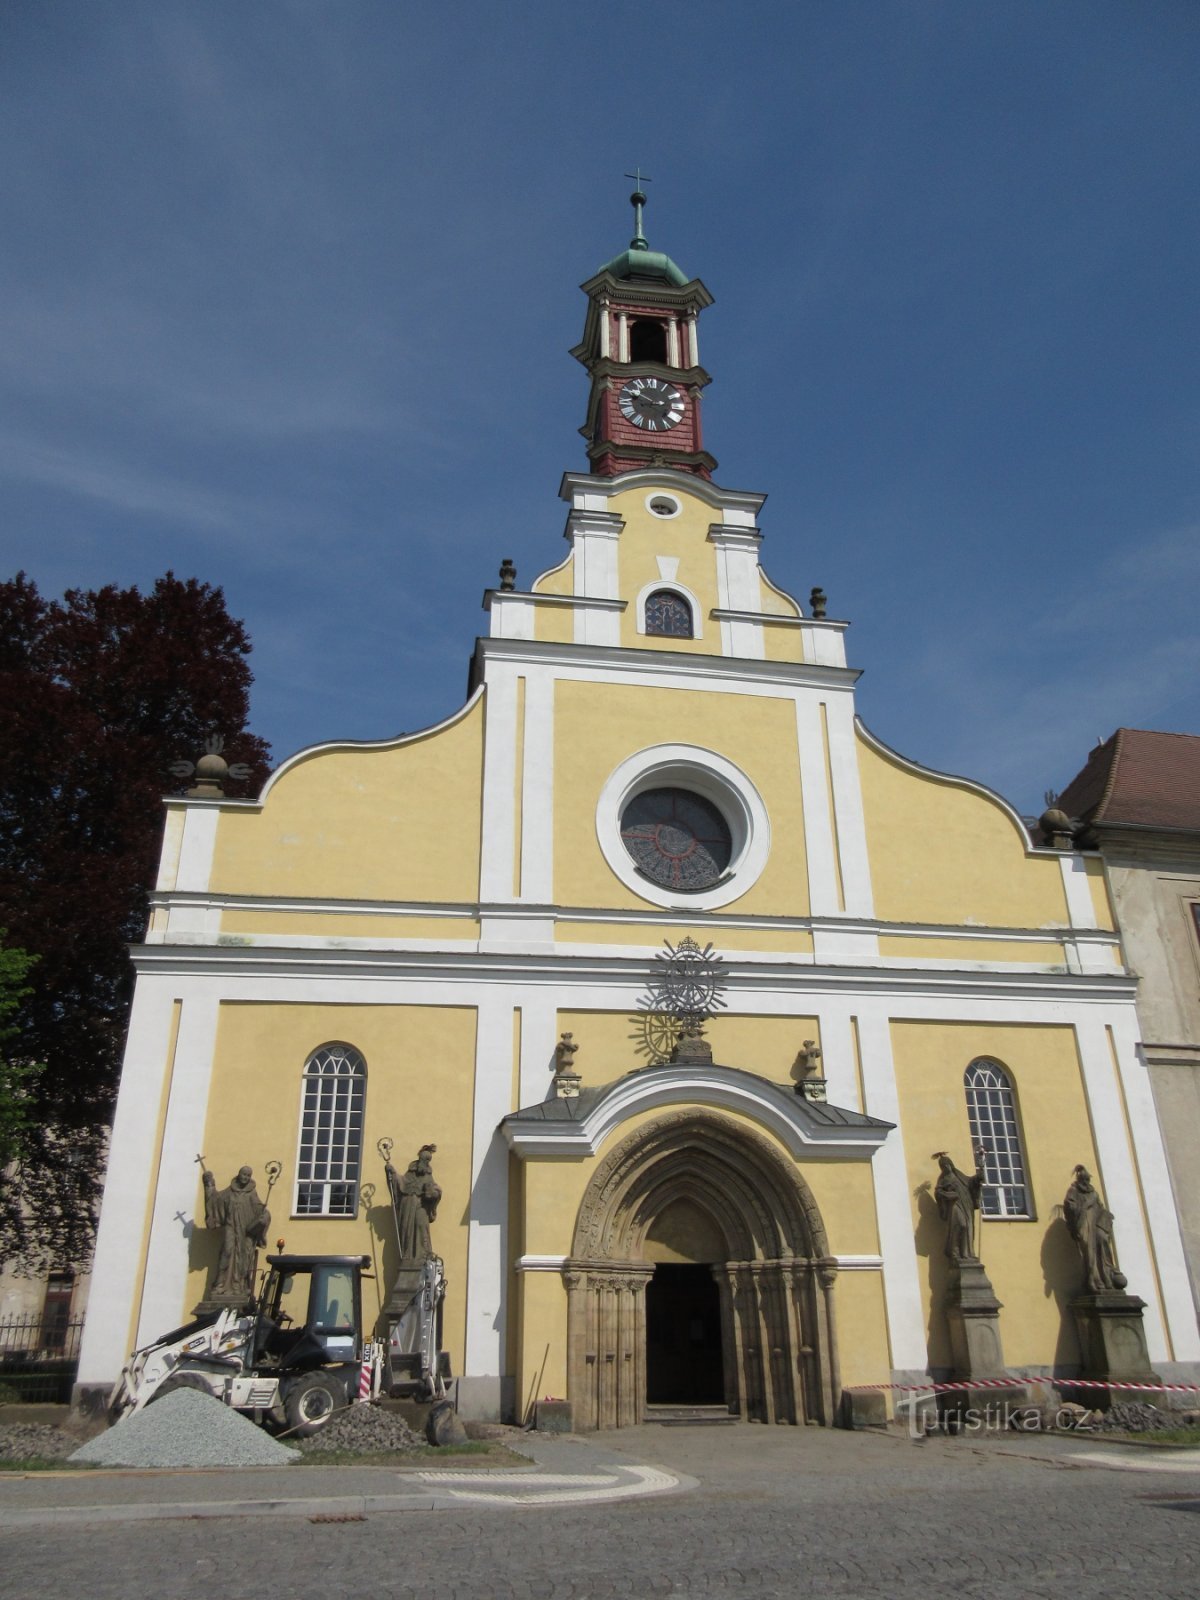 Церковь Успения Пресвятой Богородицы и четыре статуи в стиле барокко.